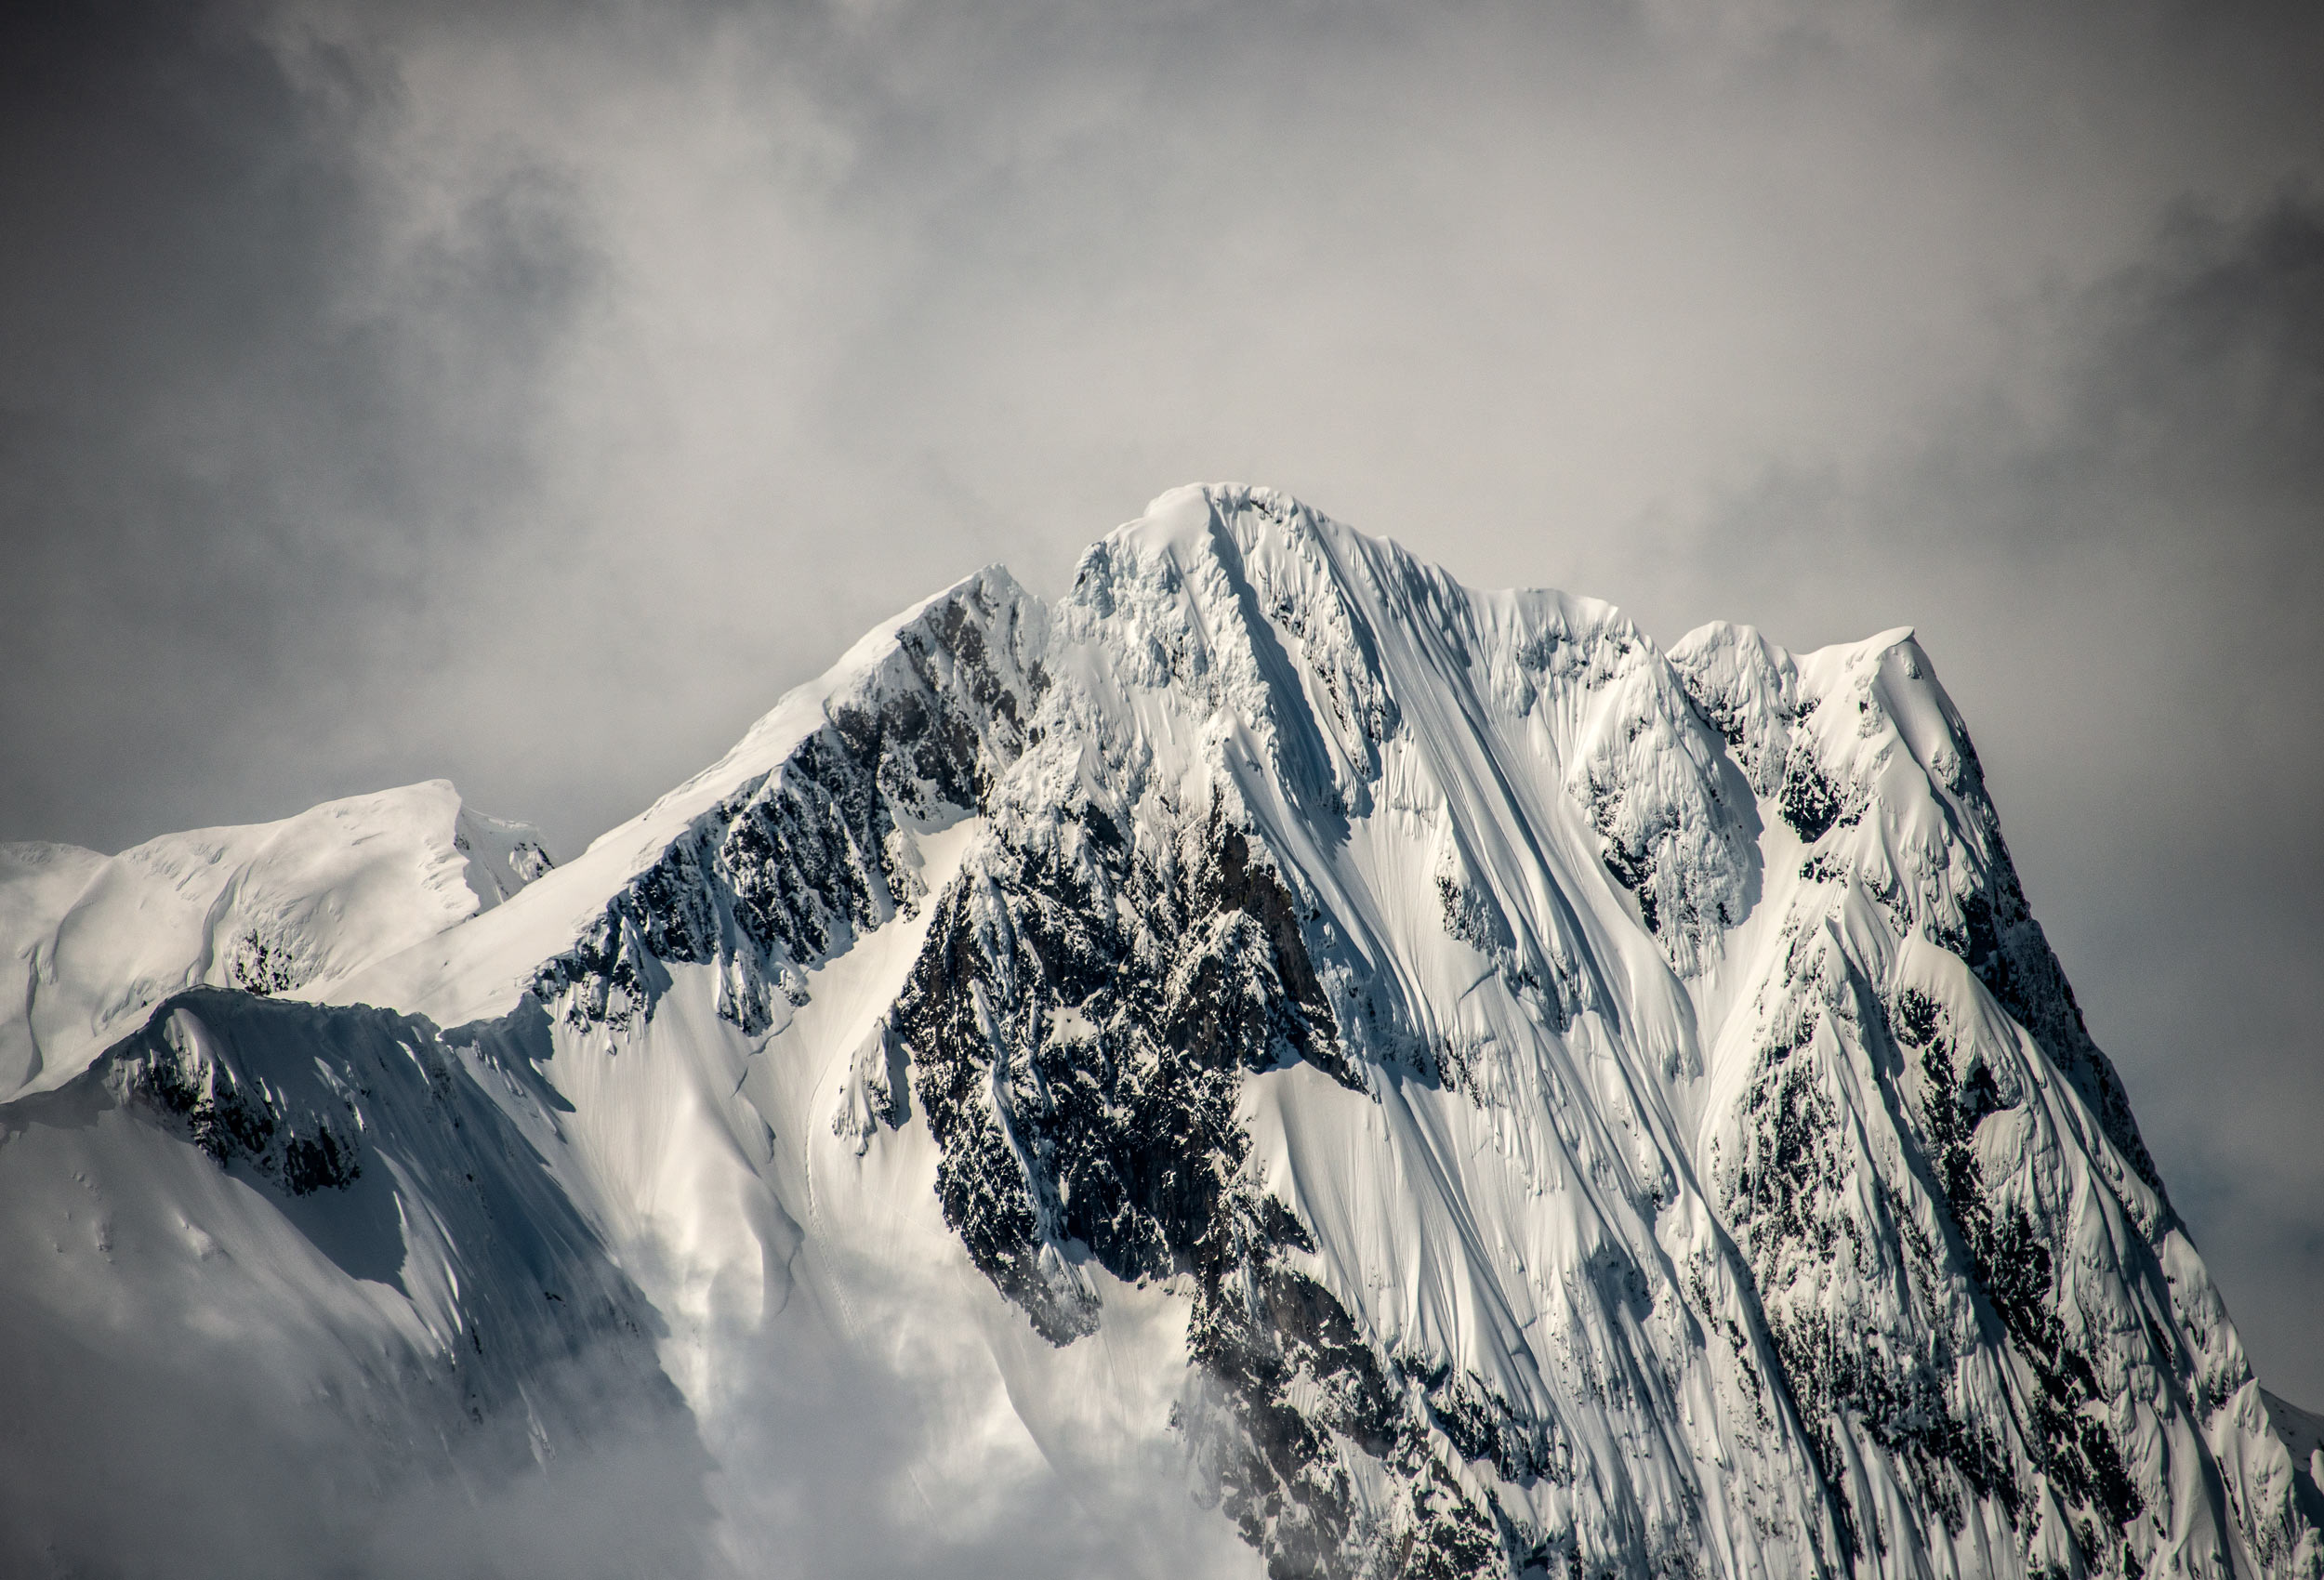 Mountain top by landscape photographer Kristopher Grunert 